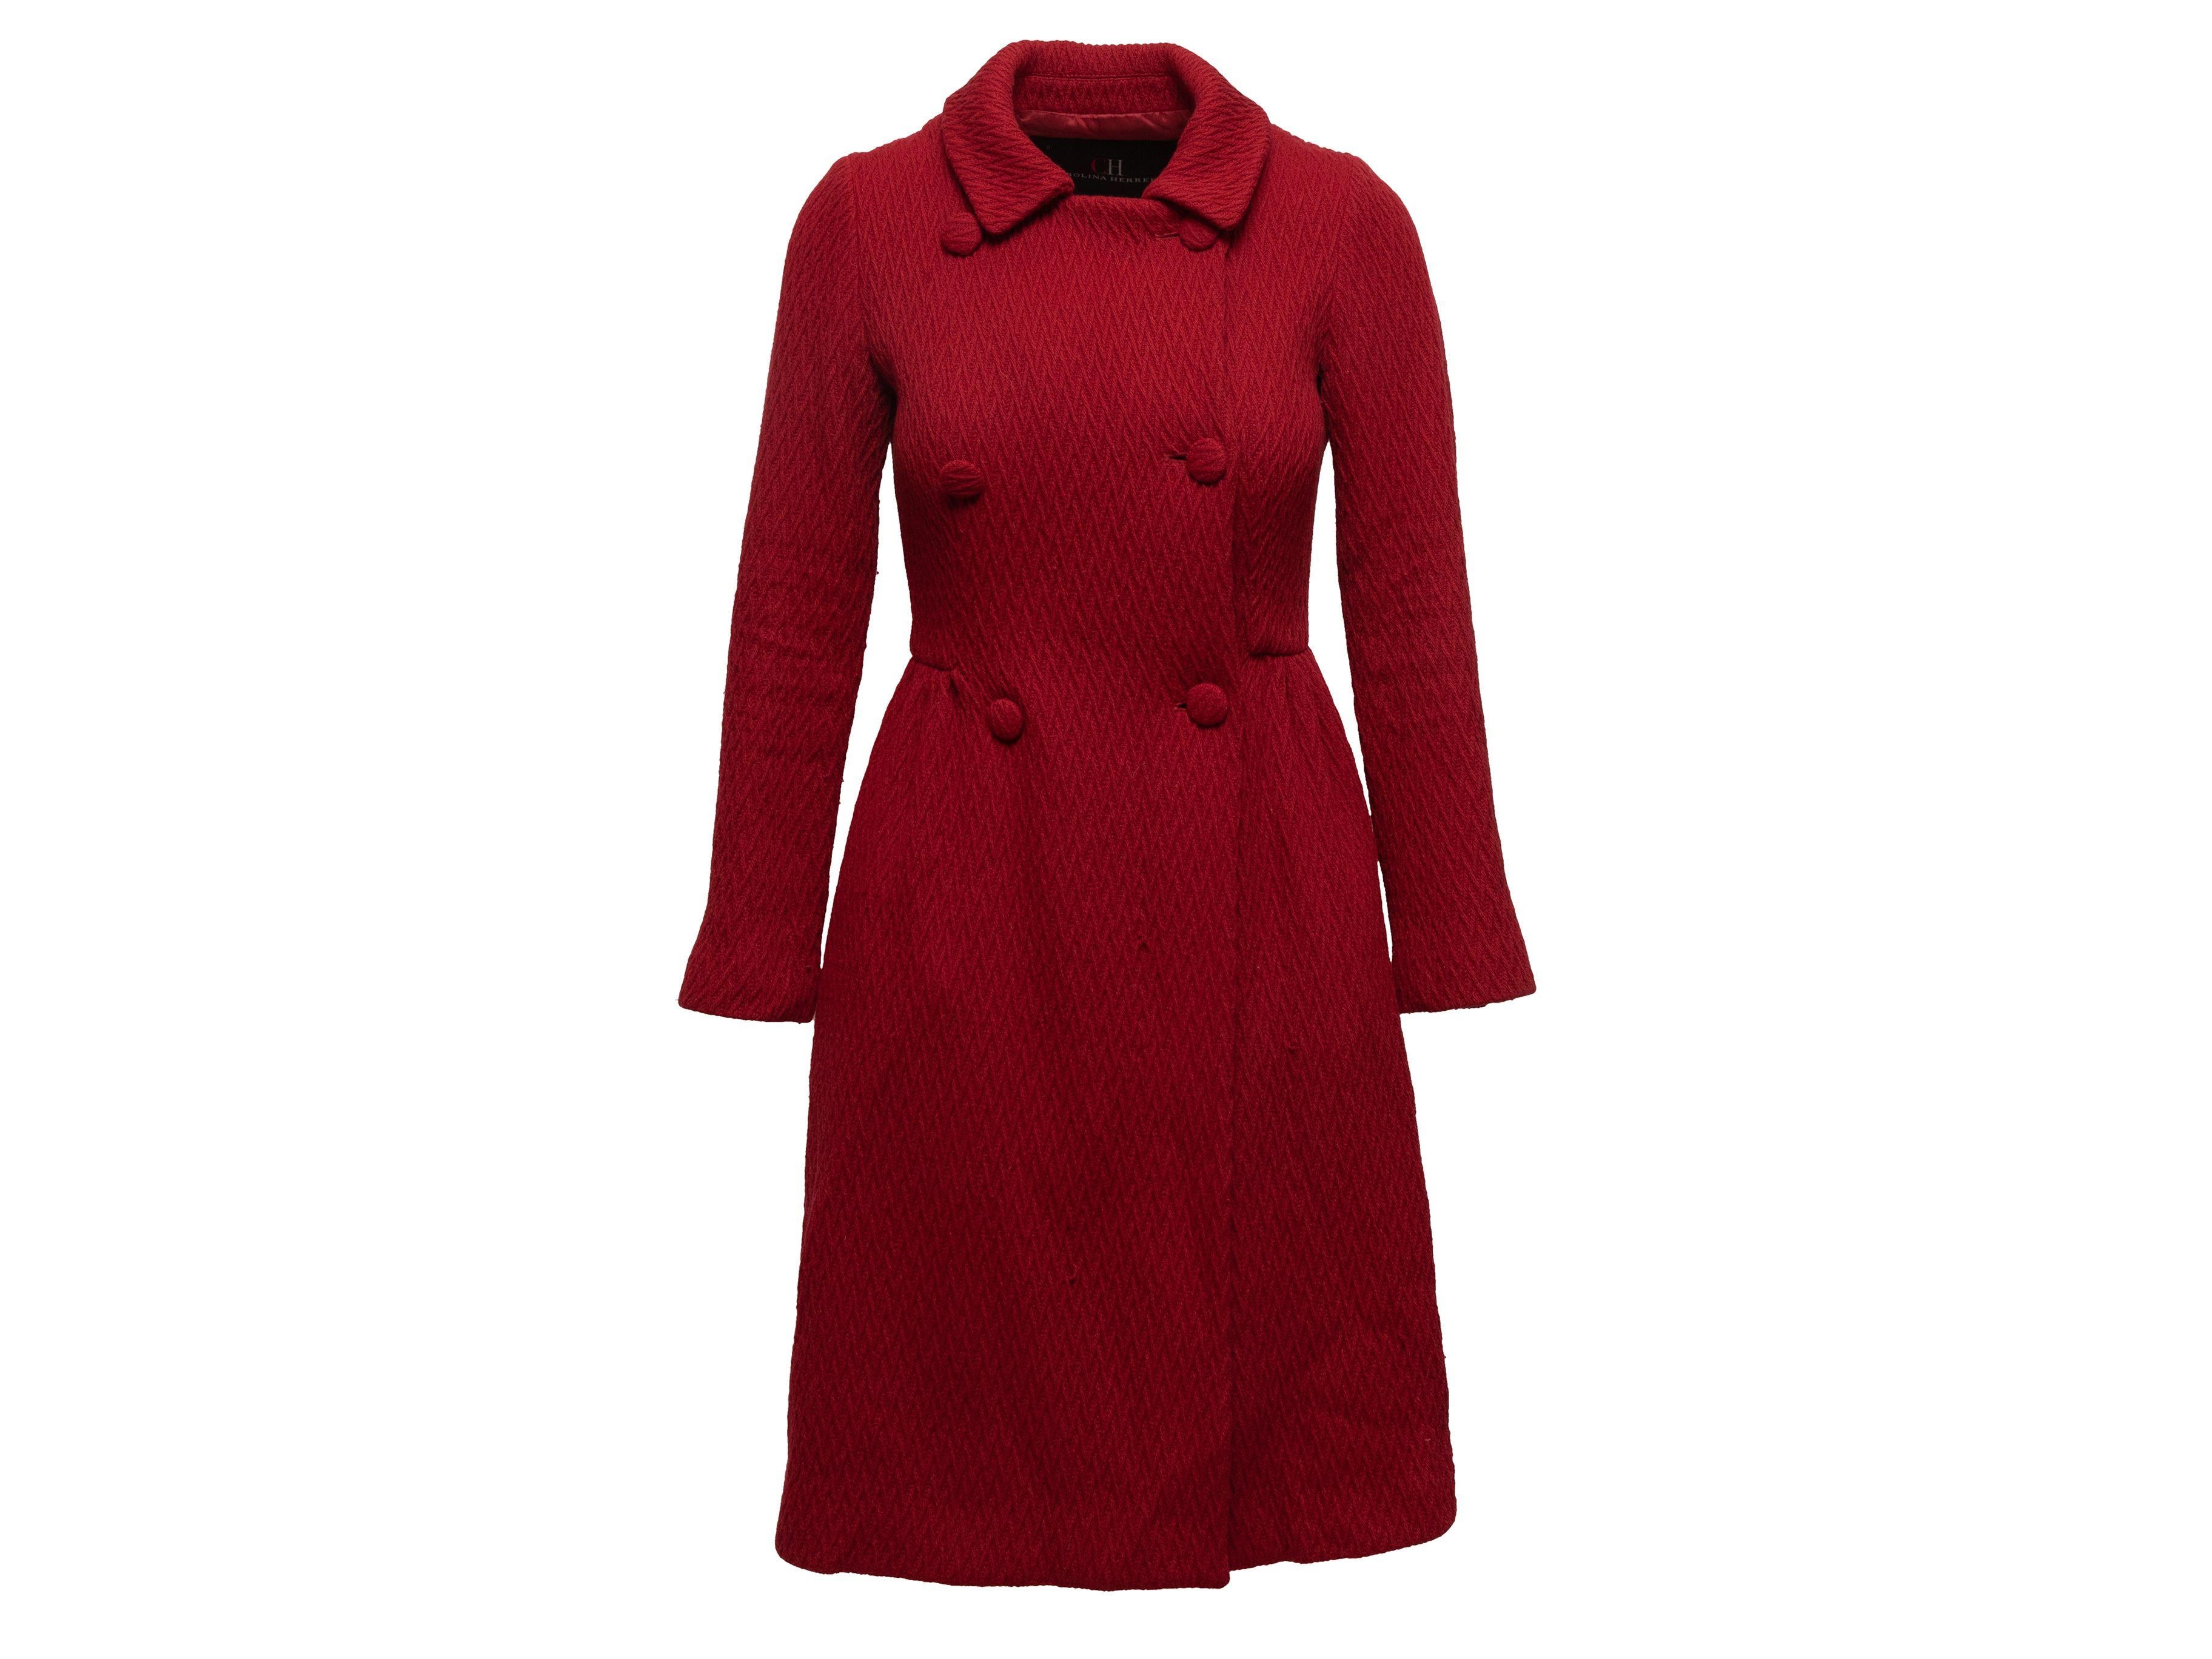 Women's Carolina Herrera Red Wool Textured Coat